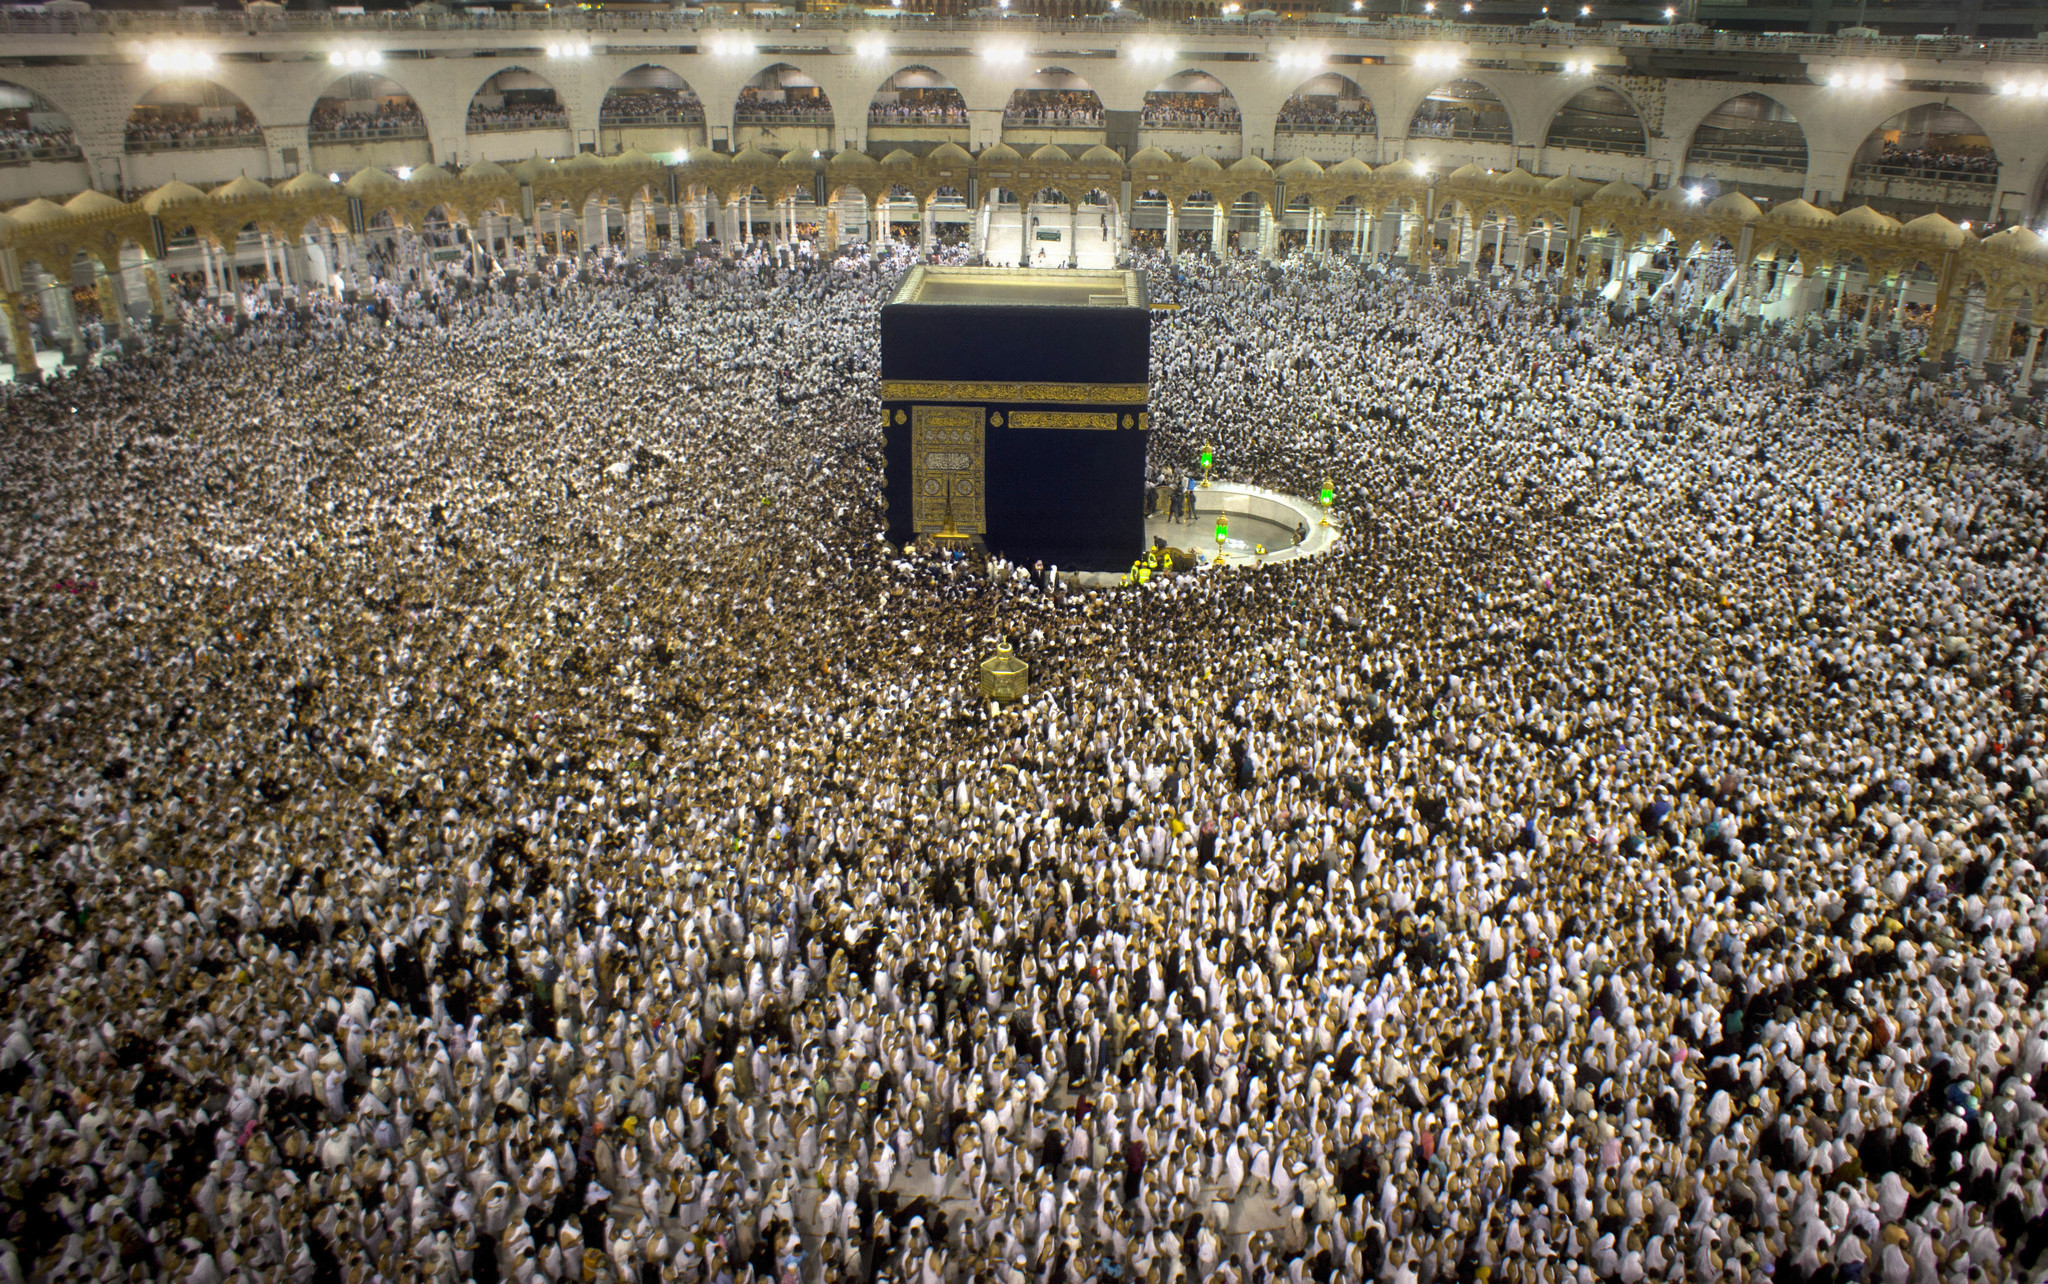 Saudis foil suicide attack near the Grand Mosque in Mecca, Islam's